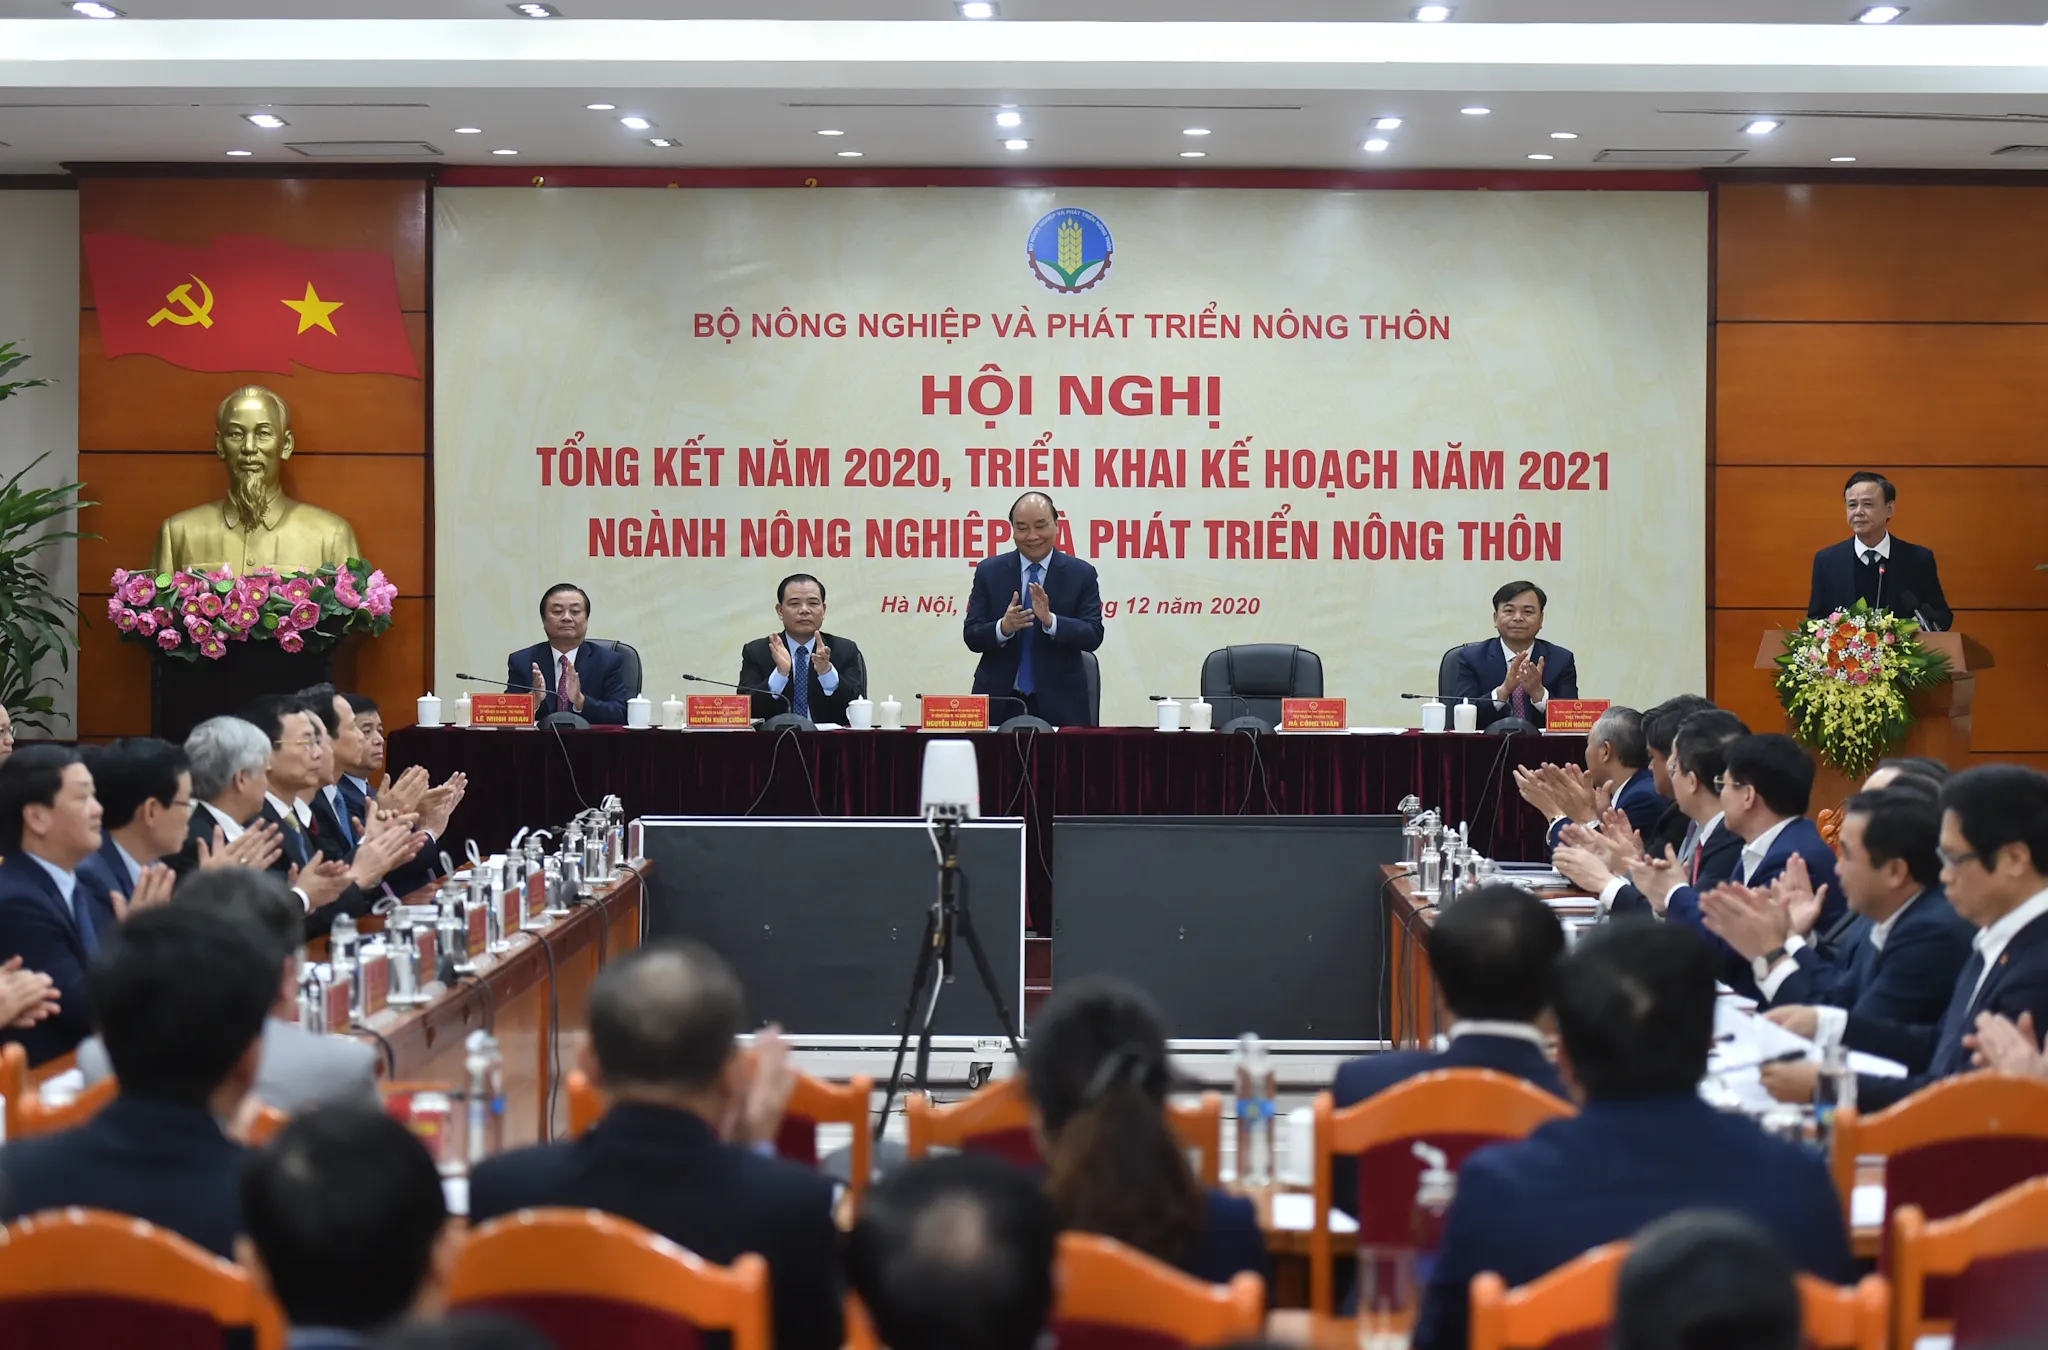 Thủ tướng Nguyễn Xuân Phúc dự Hội nghị trực tuyến tổng kết ngành NN&PTNT năm 2020, triển khai kế hoạch năm 2021.